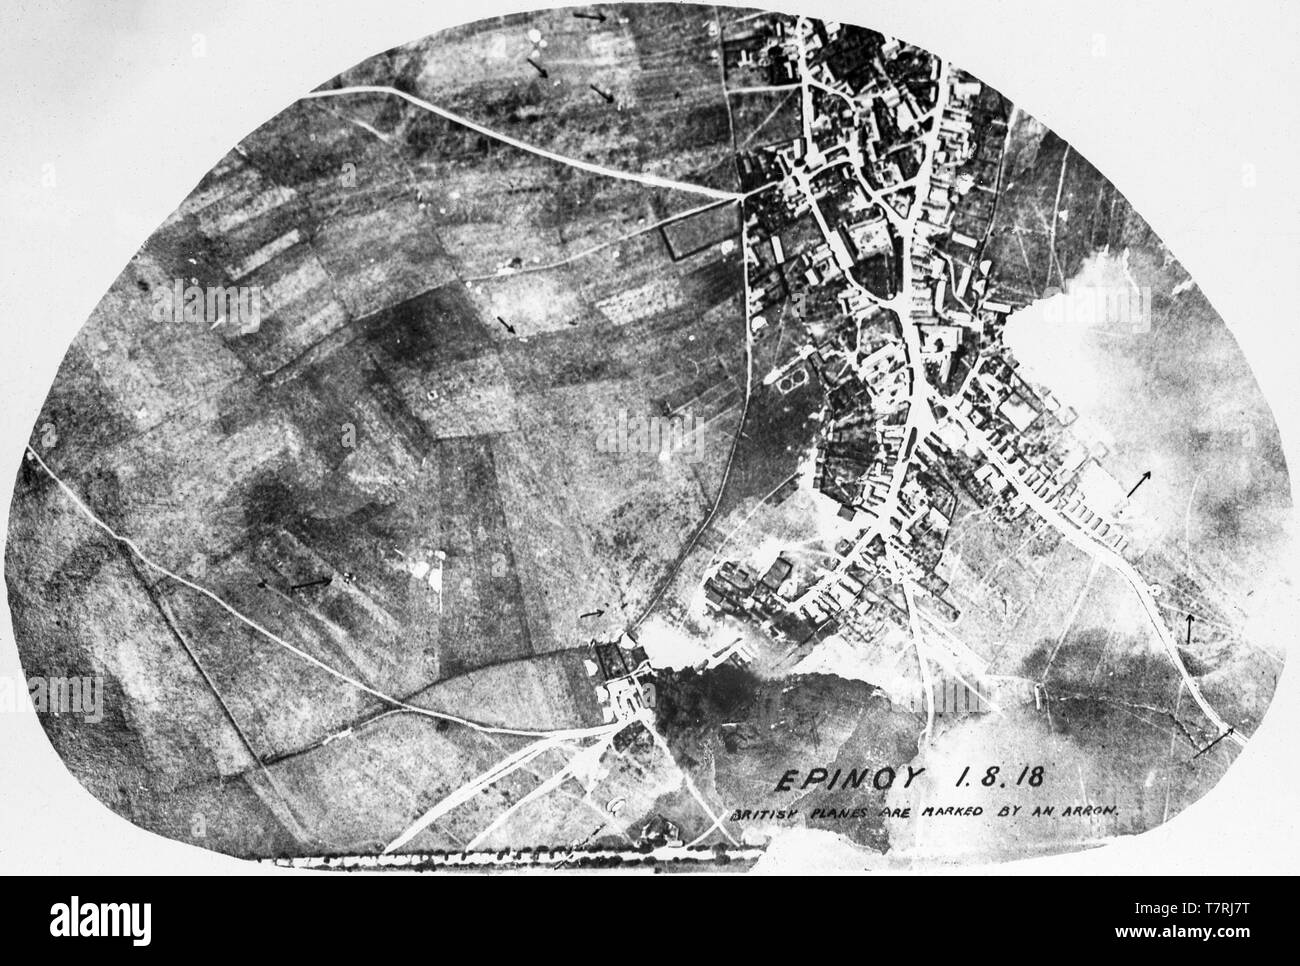 Une britannique contemporain noir et blanc photographie aérienne montrant bombardement de la ville d'Epinoy dans le Nord de France le 1er août 1918. Un certain nombre d'appareils britanniques ont été marquées par des flèches sur la photo. Banque D'Images